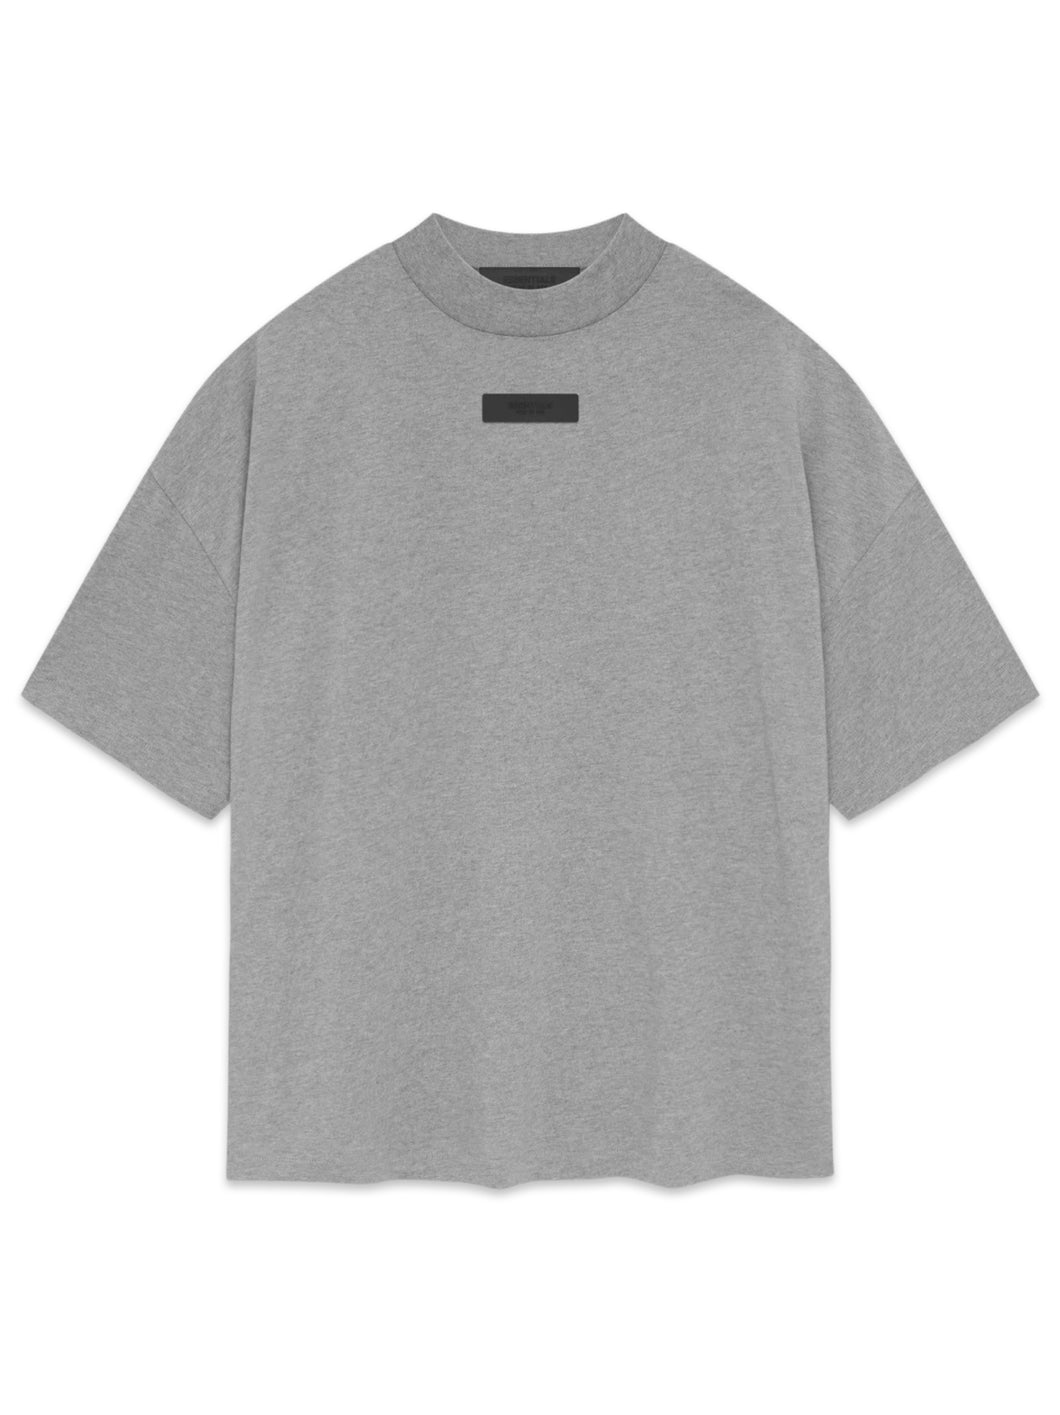 Essentials Fear of God FW24 Short Sleeve T-Shirt in Dark Heather Grey